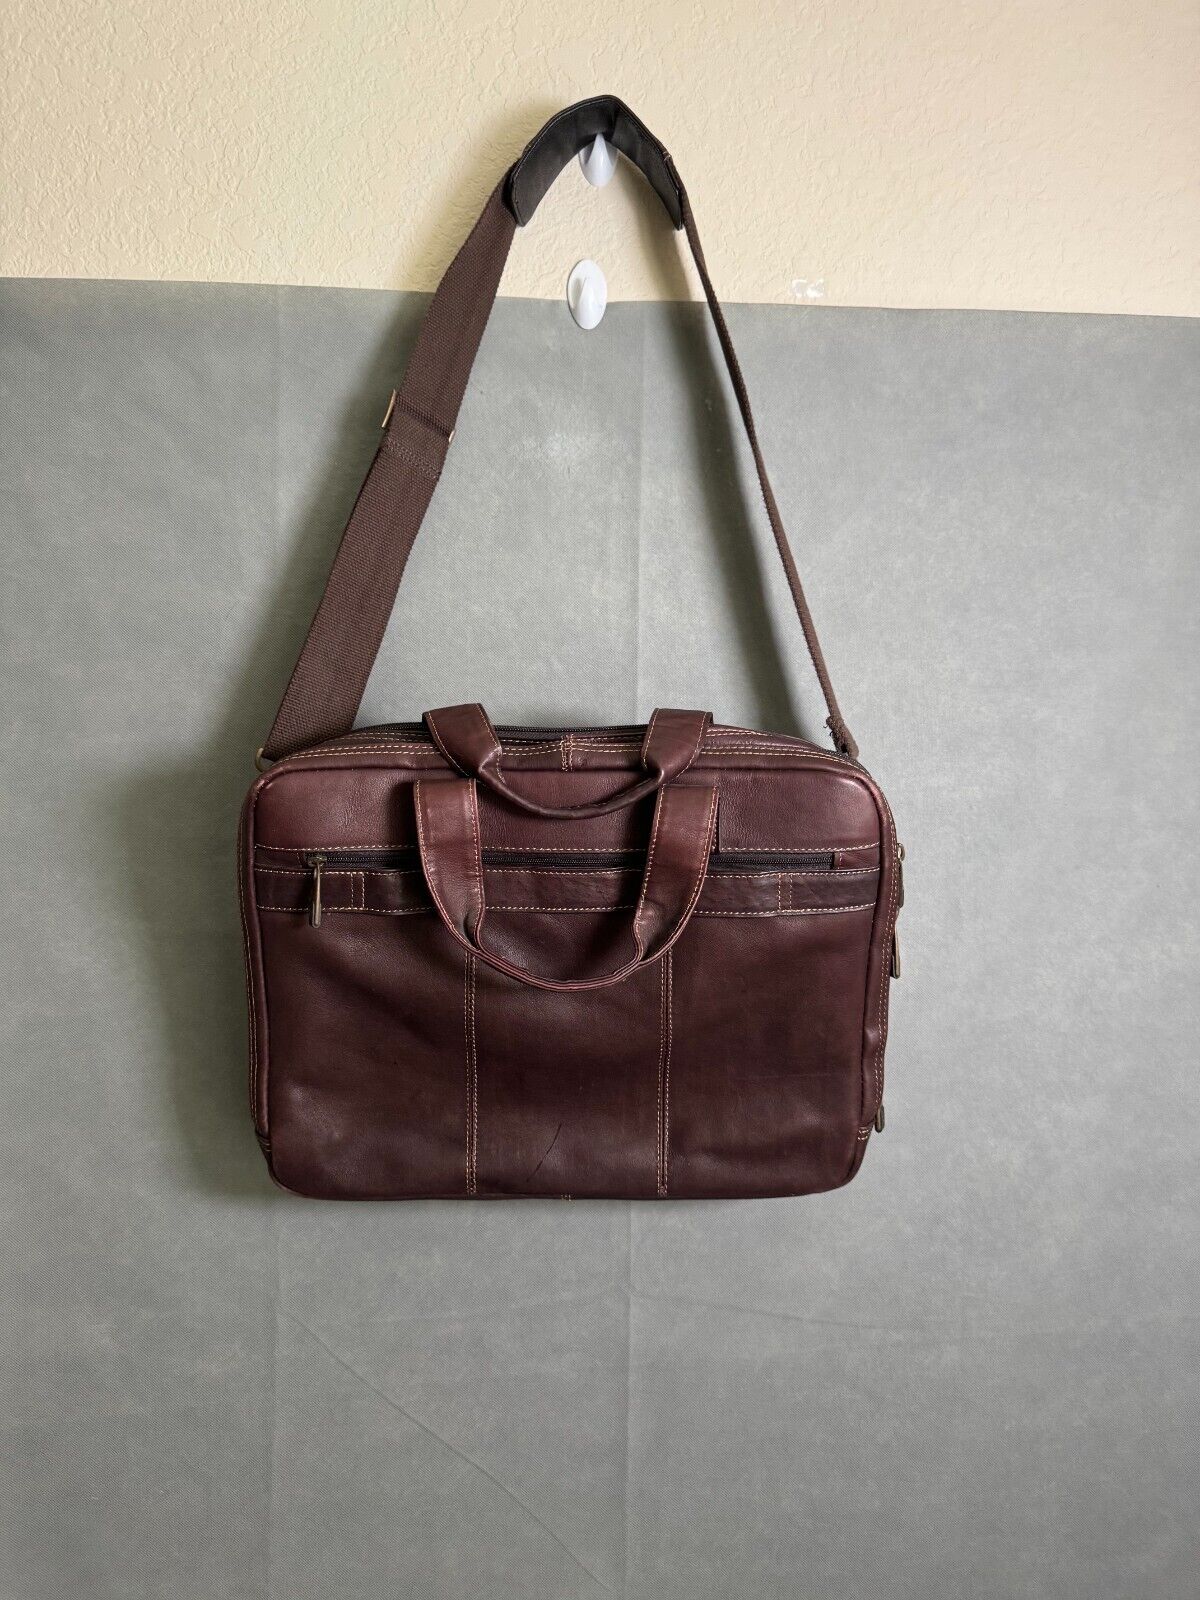 Samsonite Brown Leather Distressed Bag Briefcase Messenger Shoulder Bag